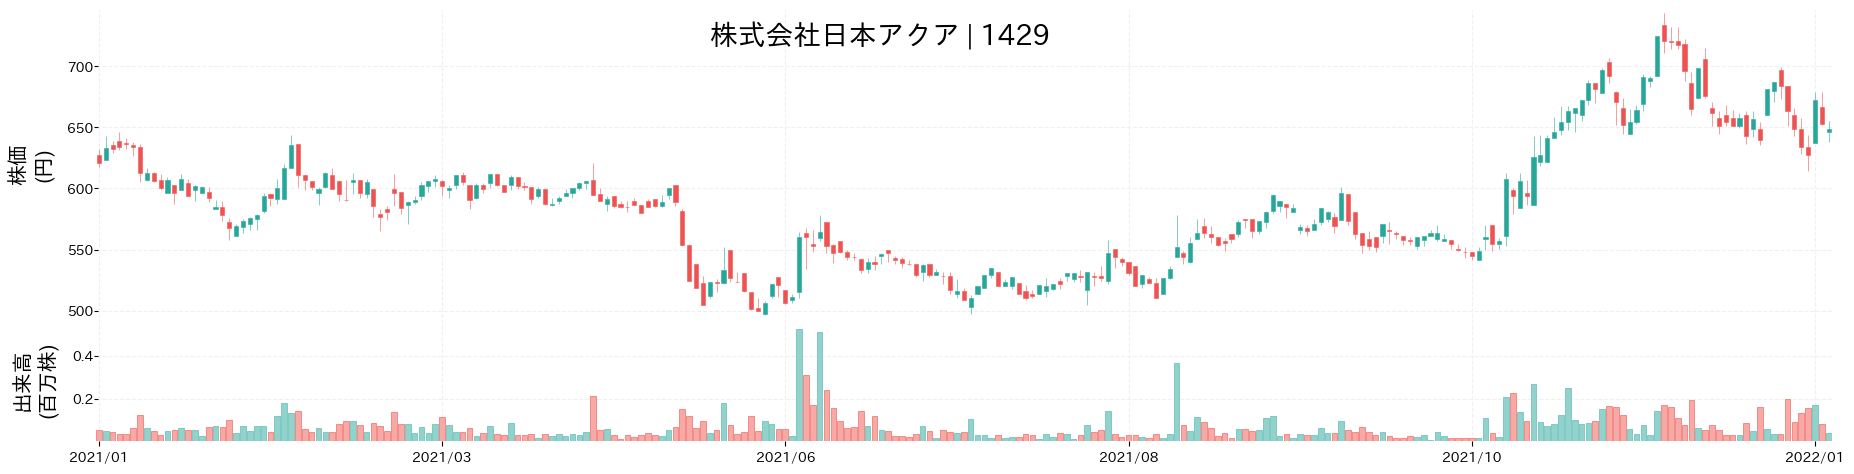 日本アクアの株価推移(2021)